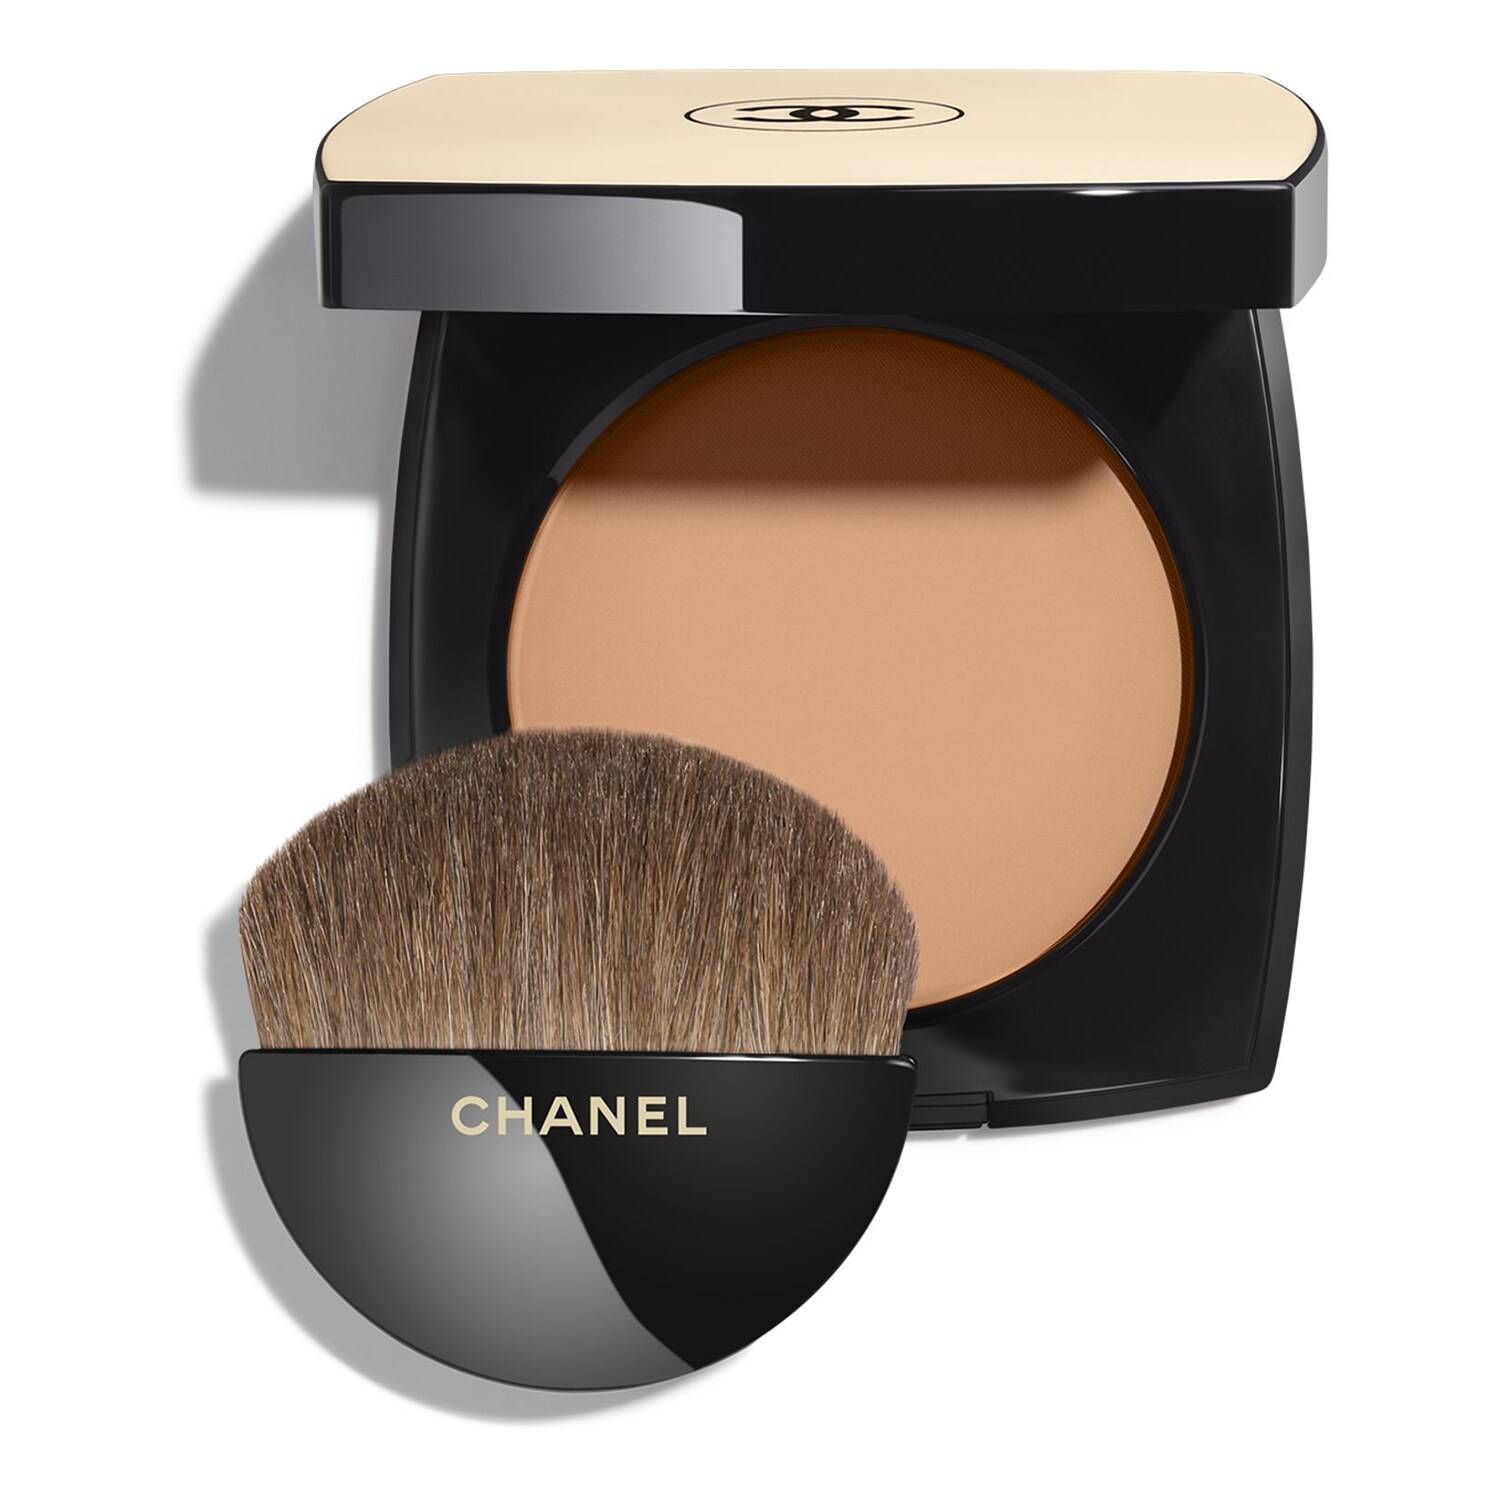 Chanel Les Beiges Healthy Glow Powder 12G B60